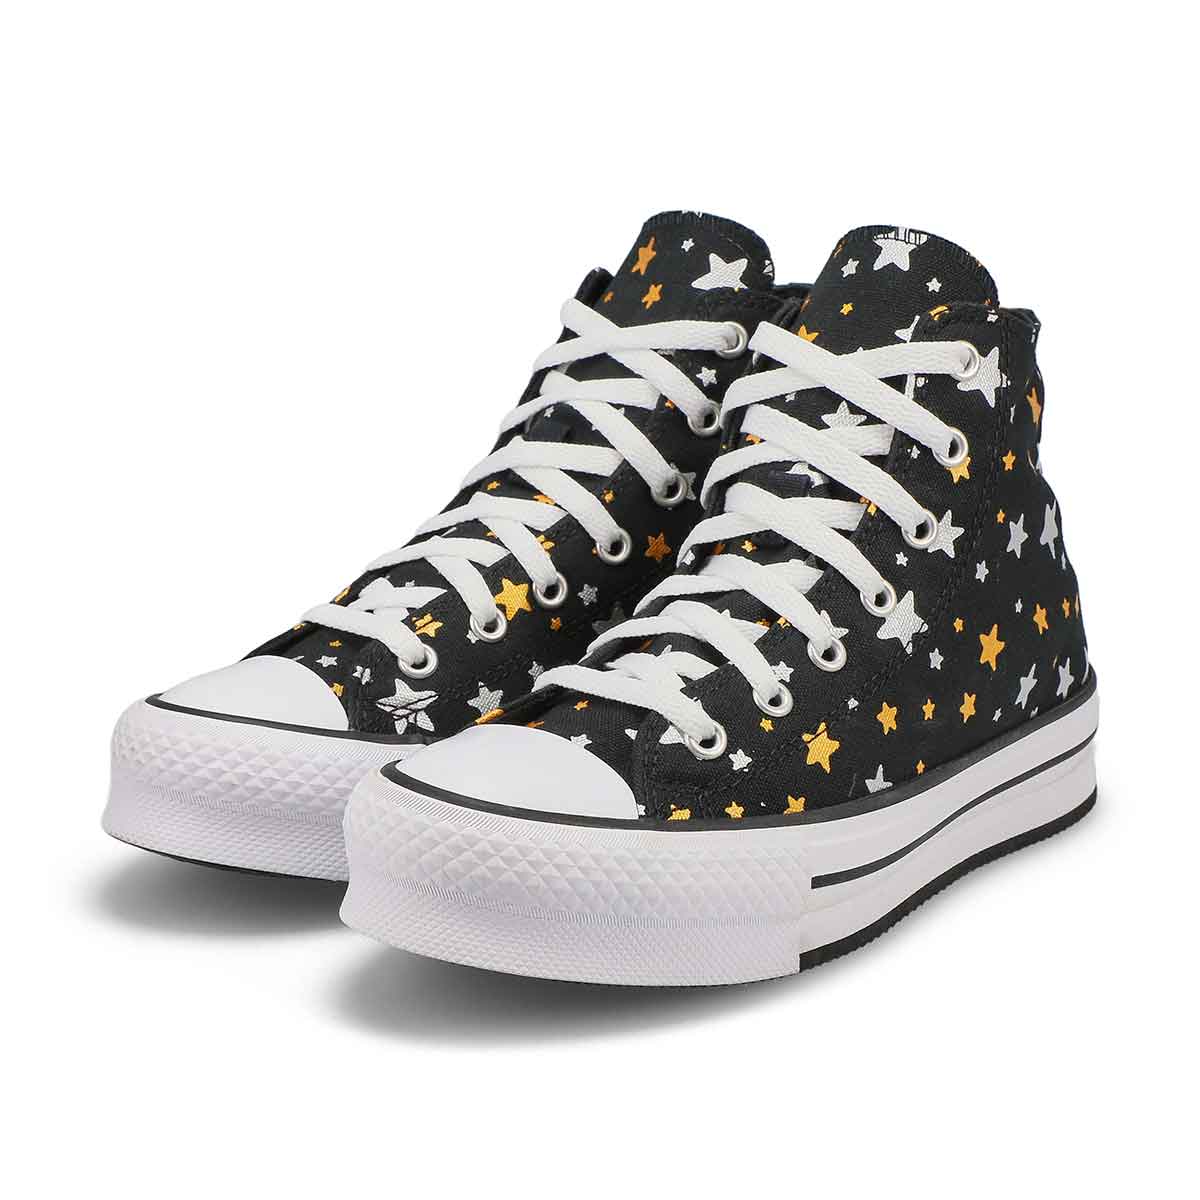 Girls Chuck Taylor All Star Eva Lift Platform Sneaker - Black/Silver